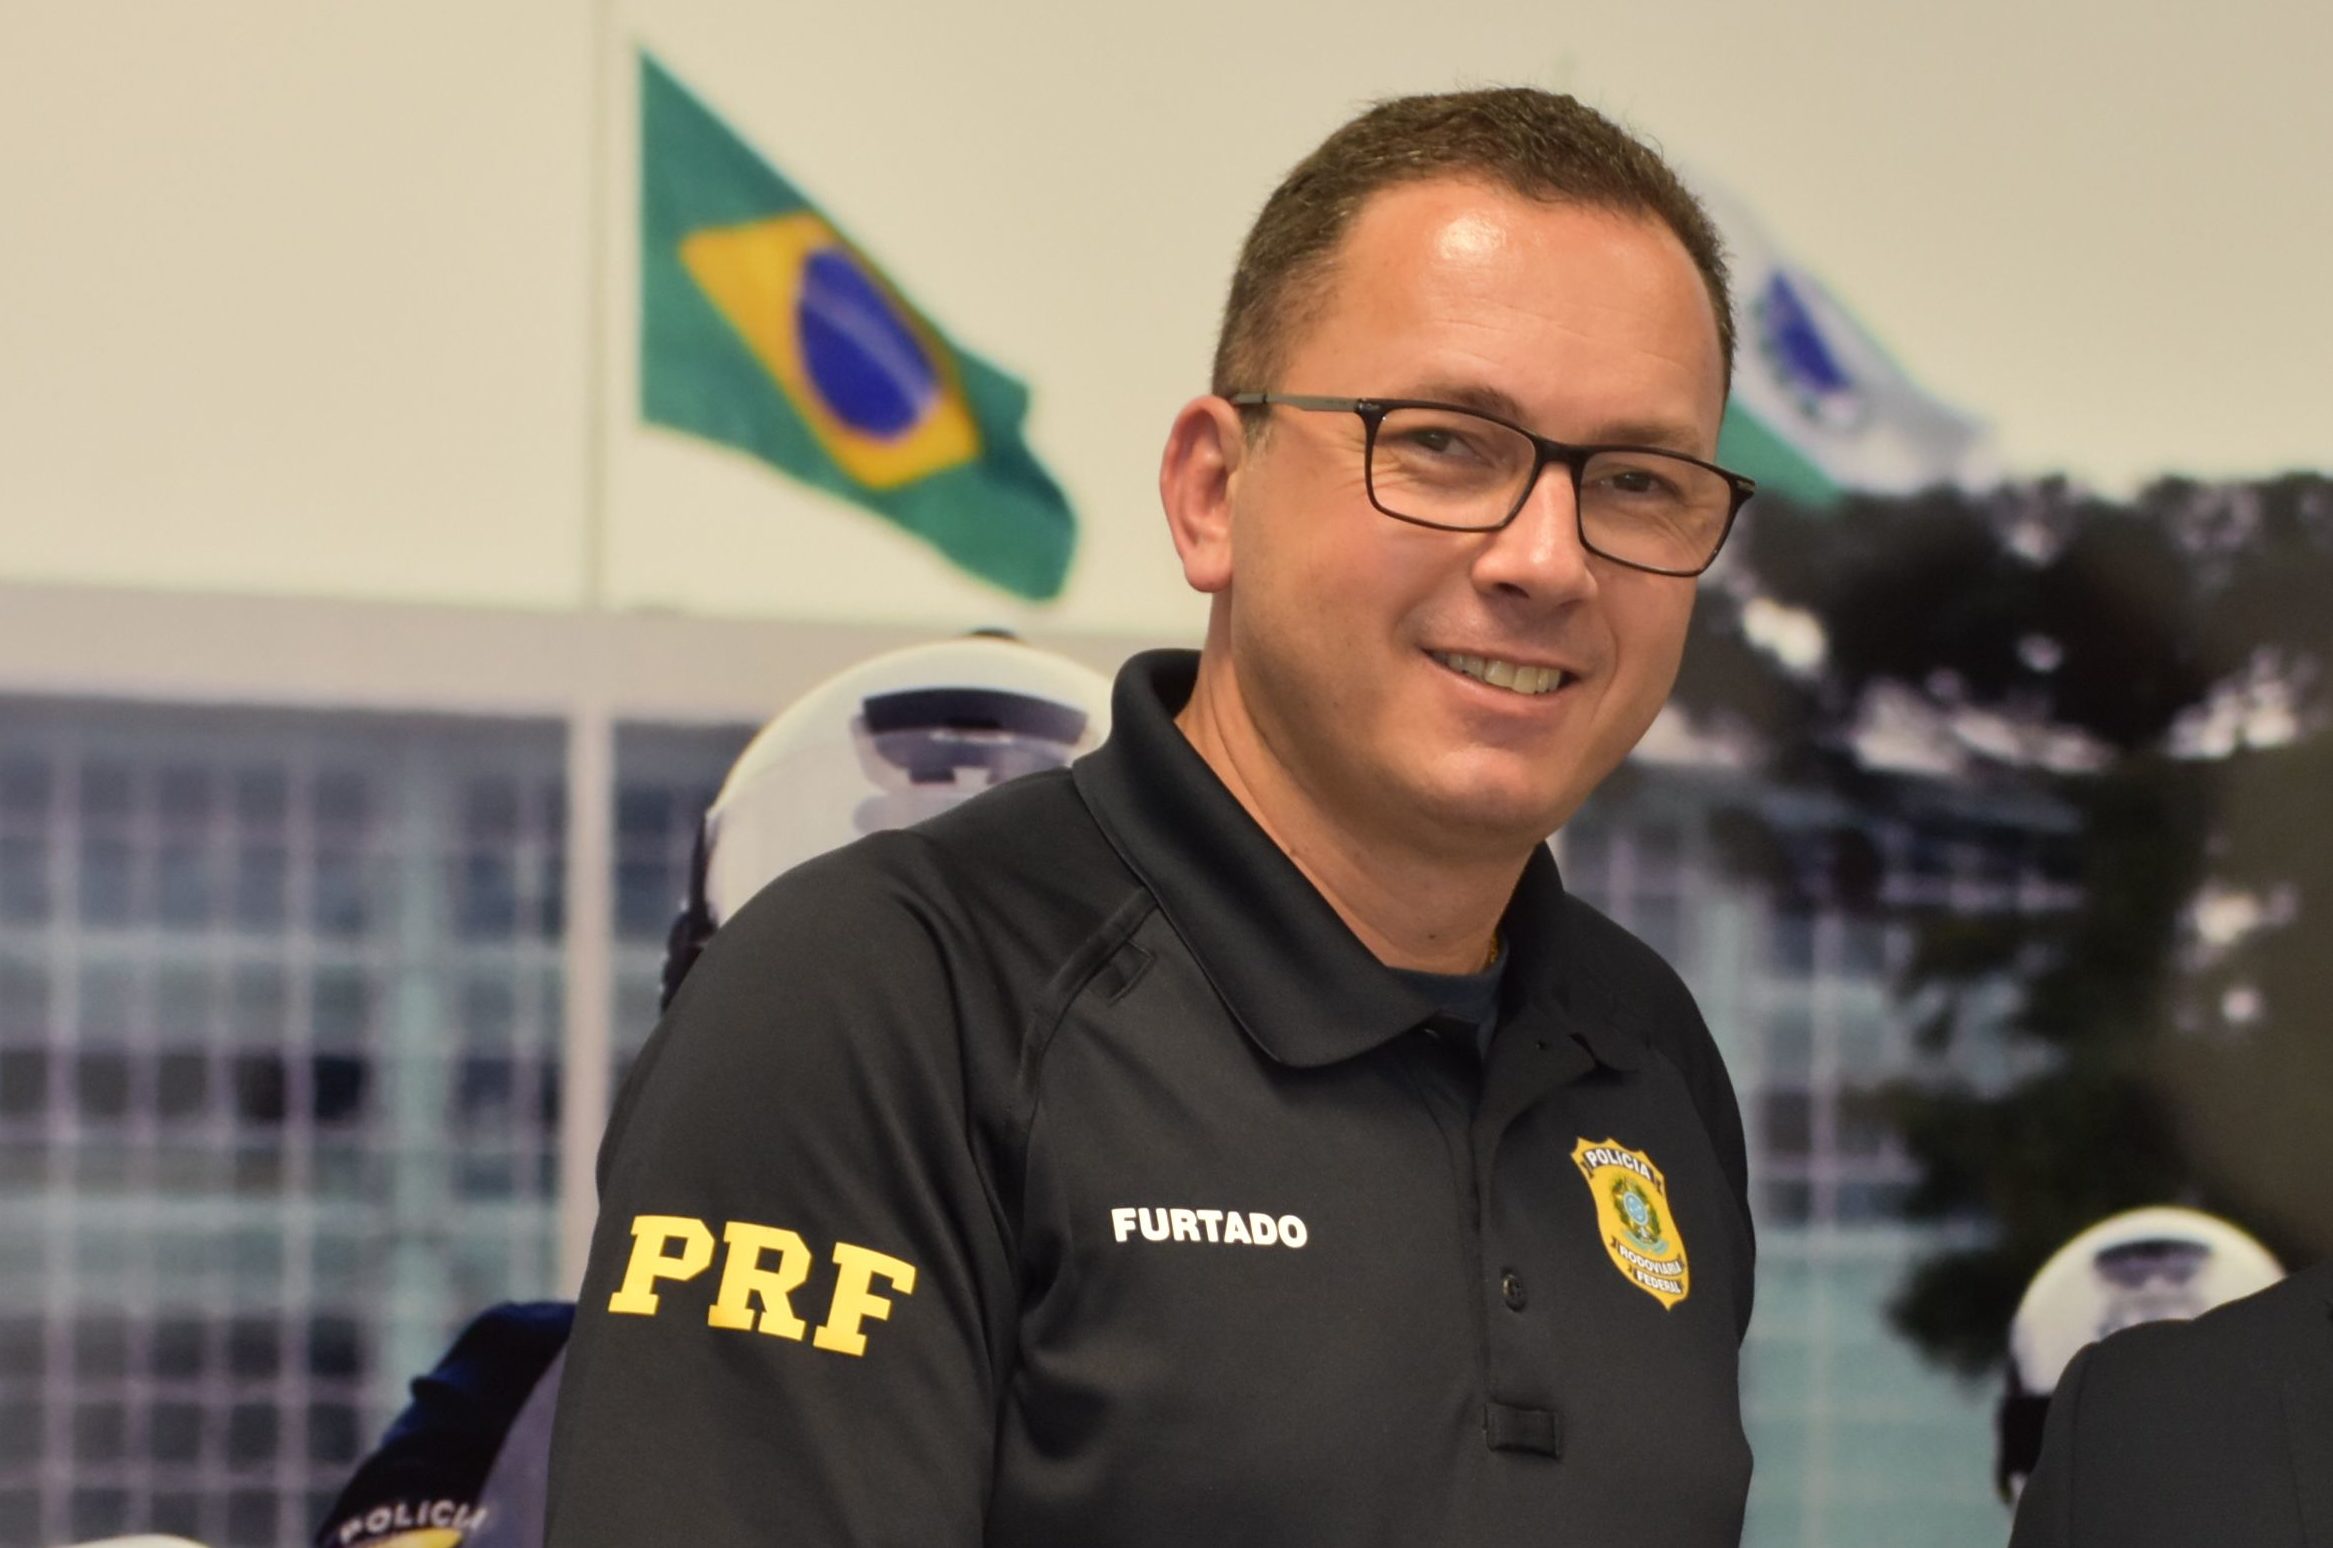  Superintendente da PRF no Paraná será novo diretor geral da corporação